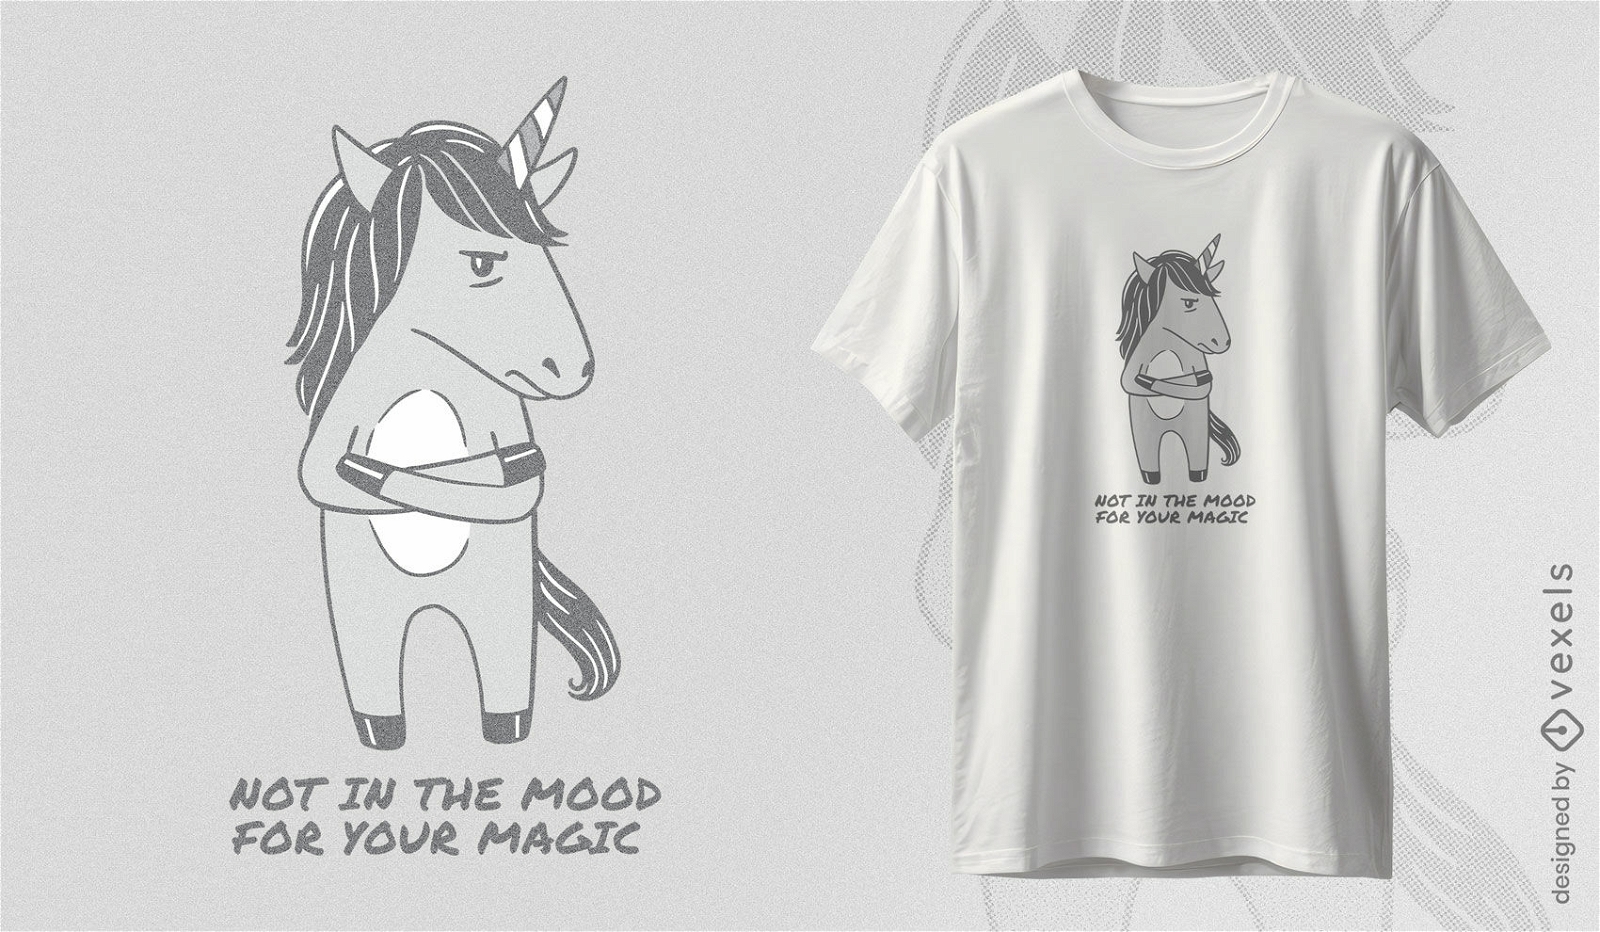 Dise?o de camiseta de humor unicornio.